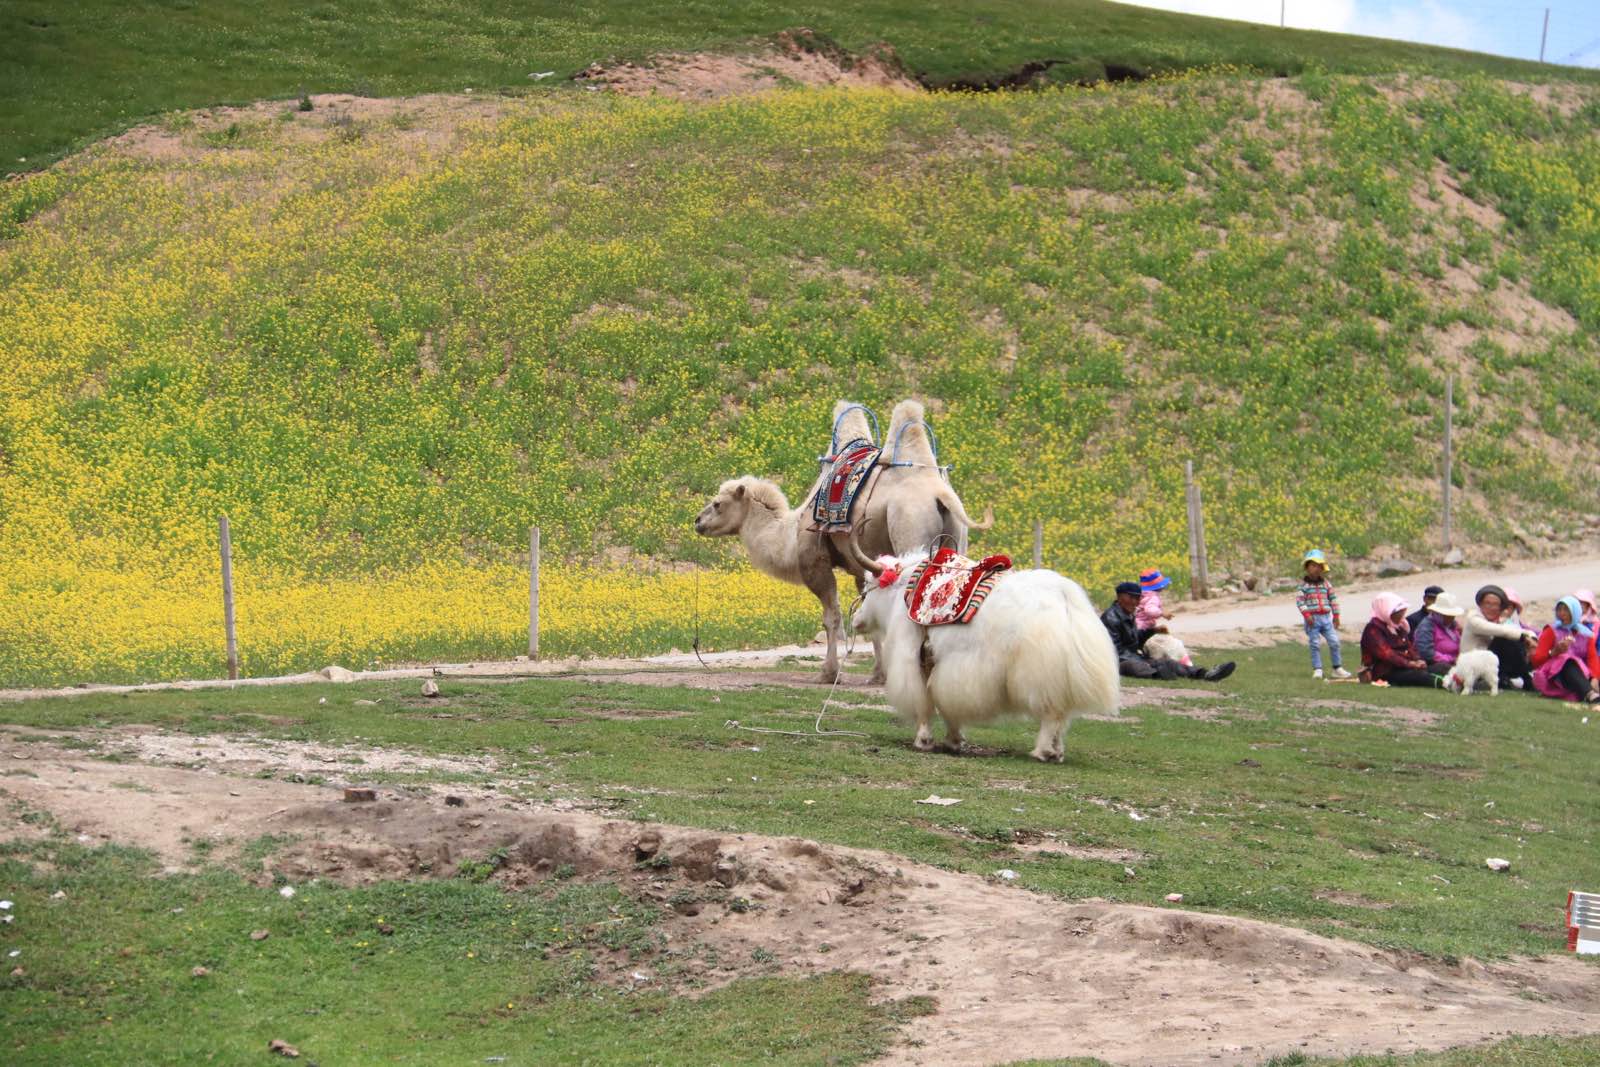 途径日月山，海拔不断攀高，传说文成公主远嫁吐鲁番路径此地，非常思念故乡